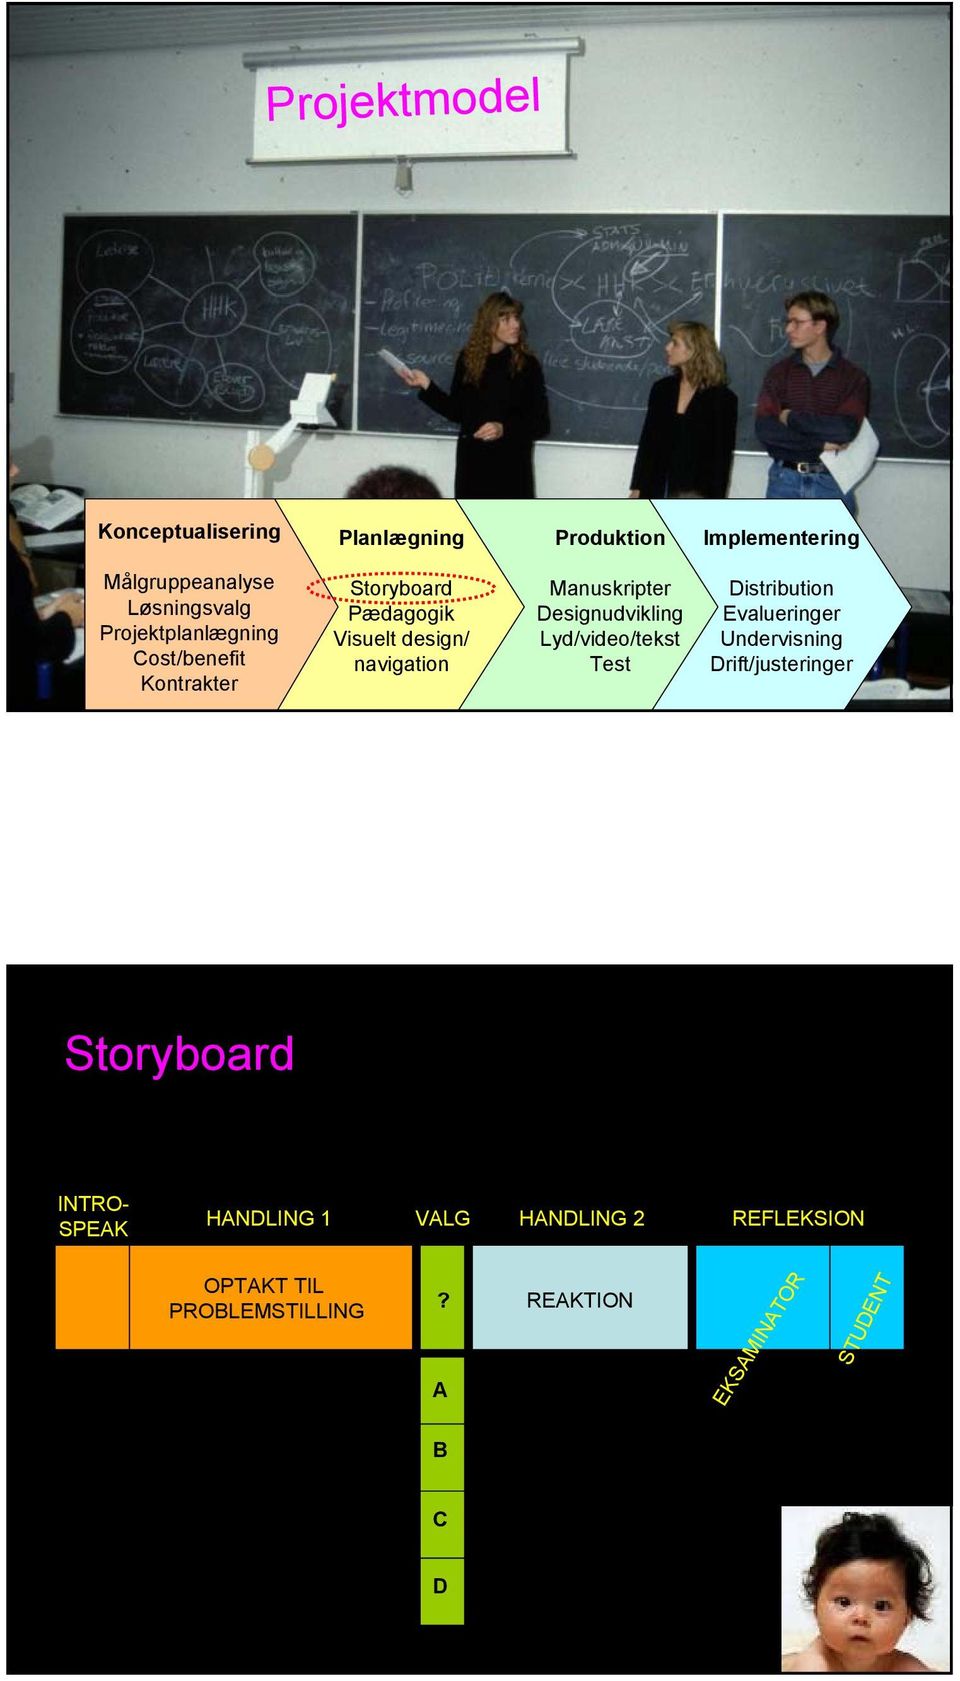 Designudvikling Lyd/video/tekst Test Distribution Evalueringer Undervisning Drift/justeringer Storyboard